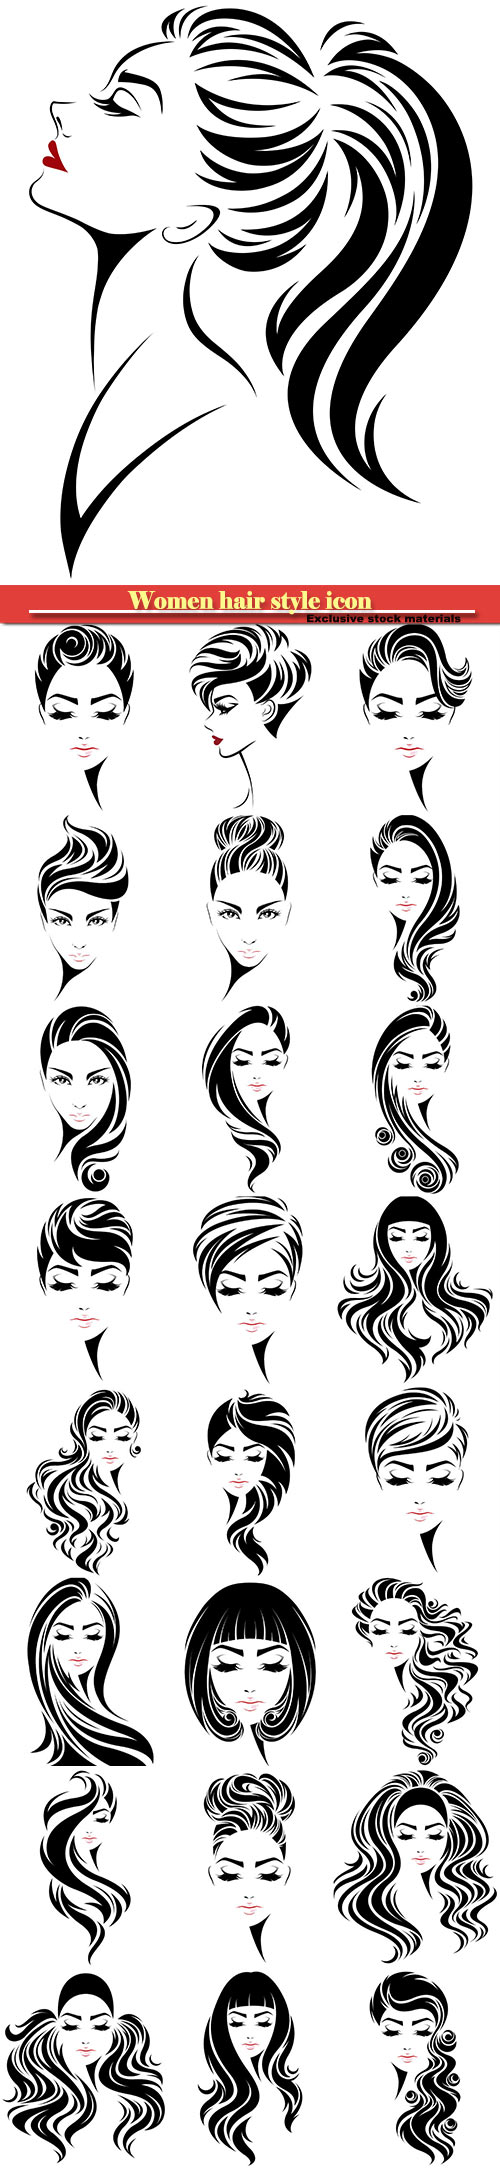 Women hair style icon, logo women face on white background #2